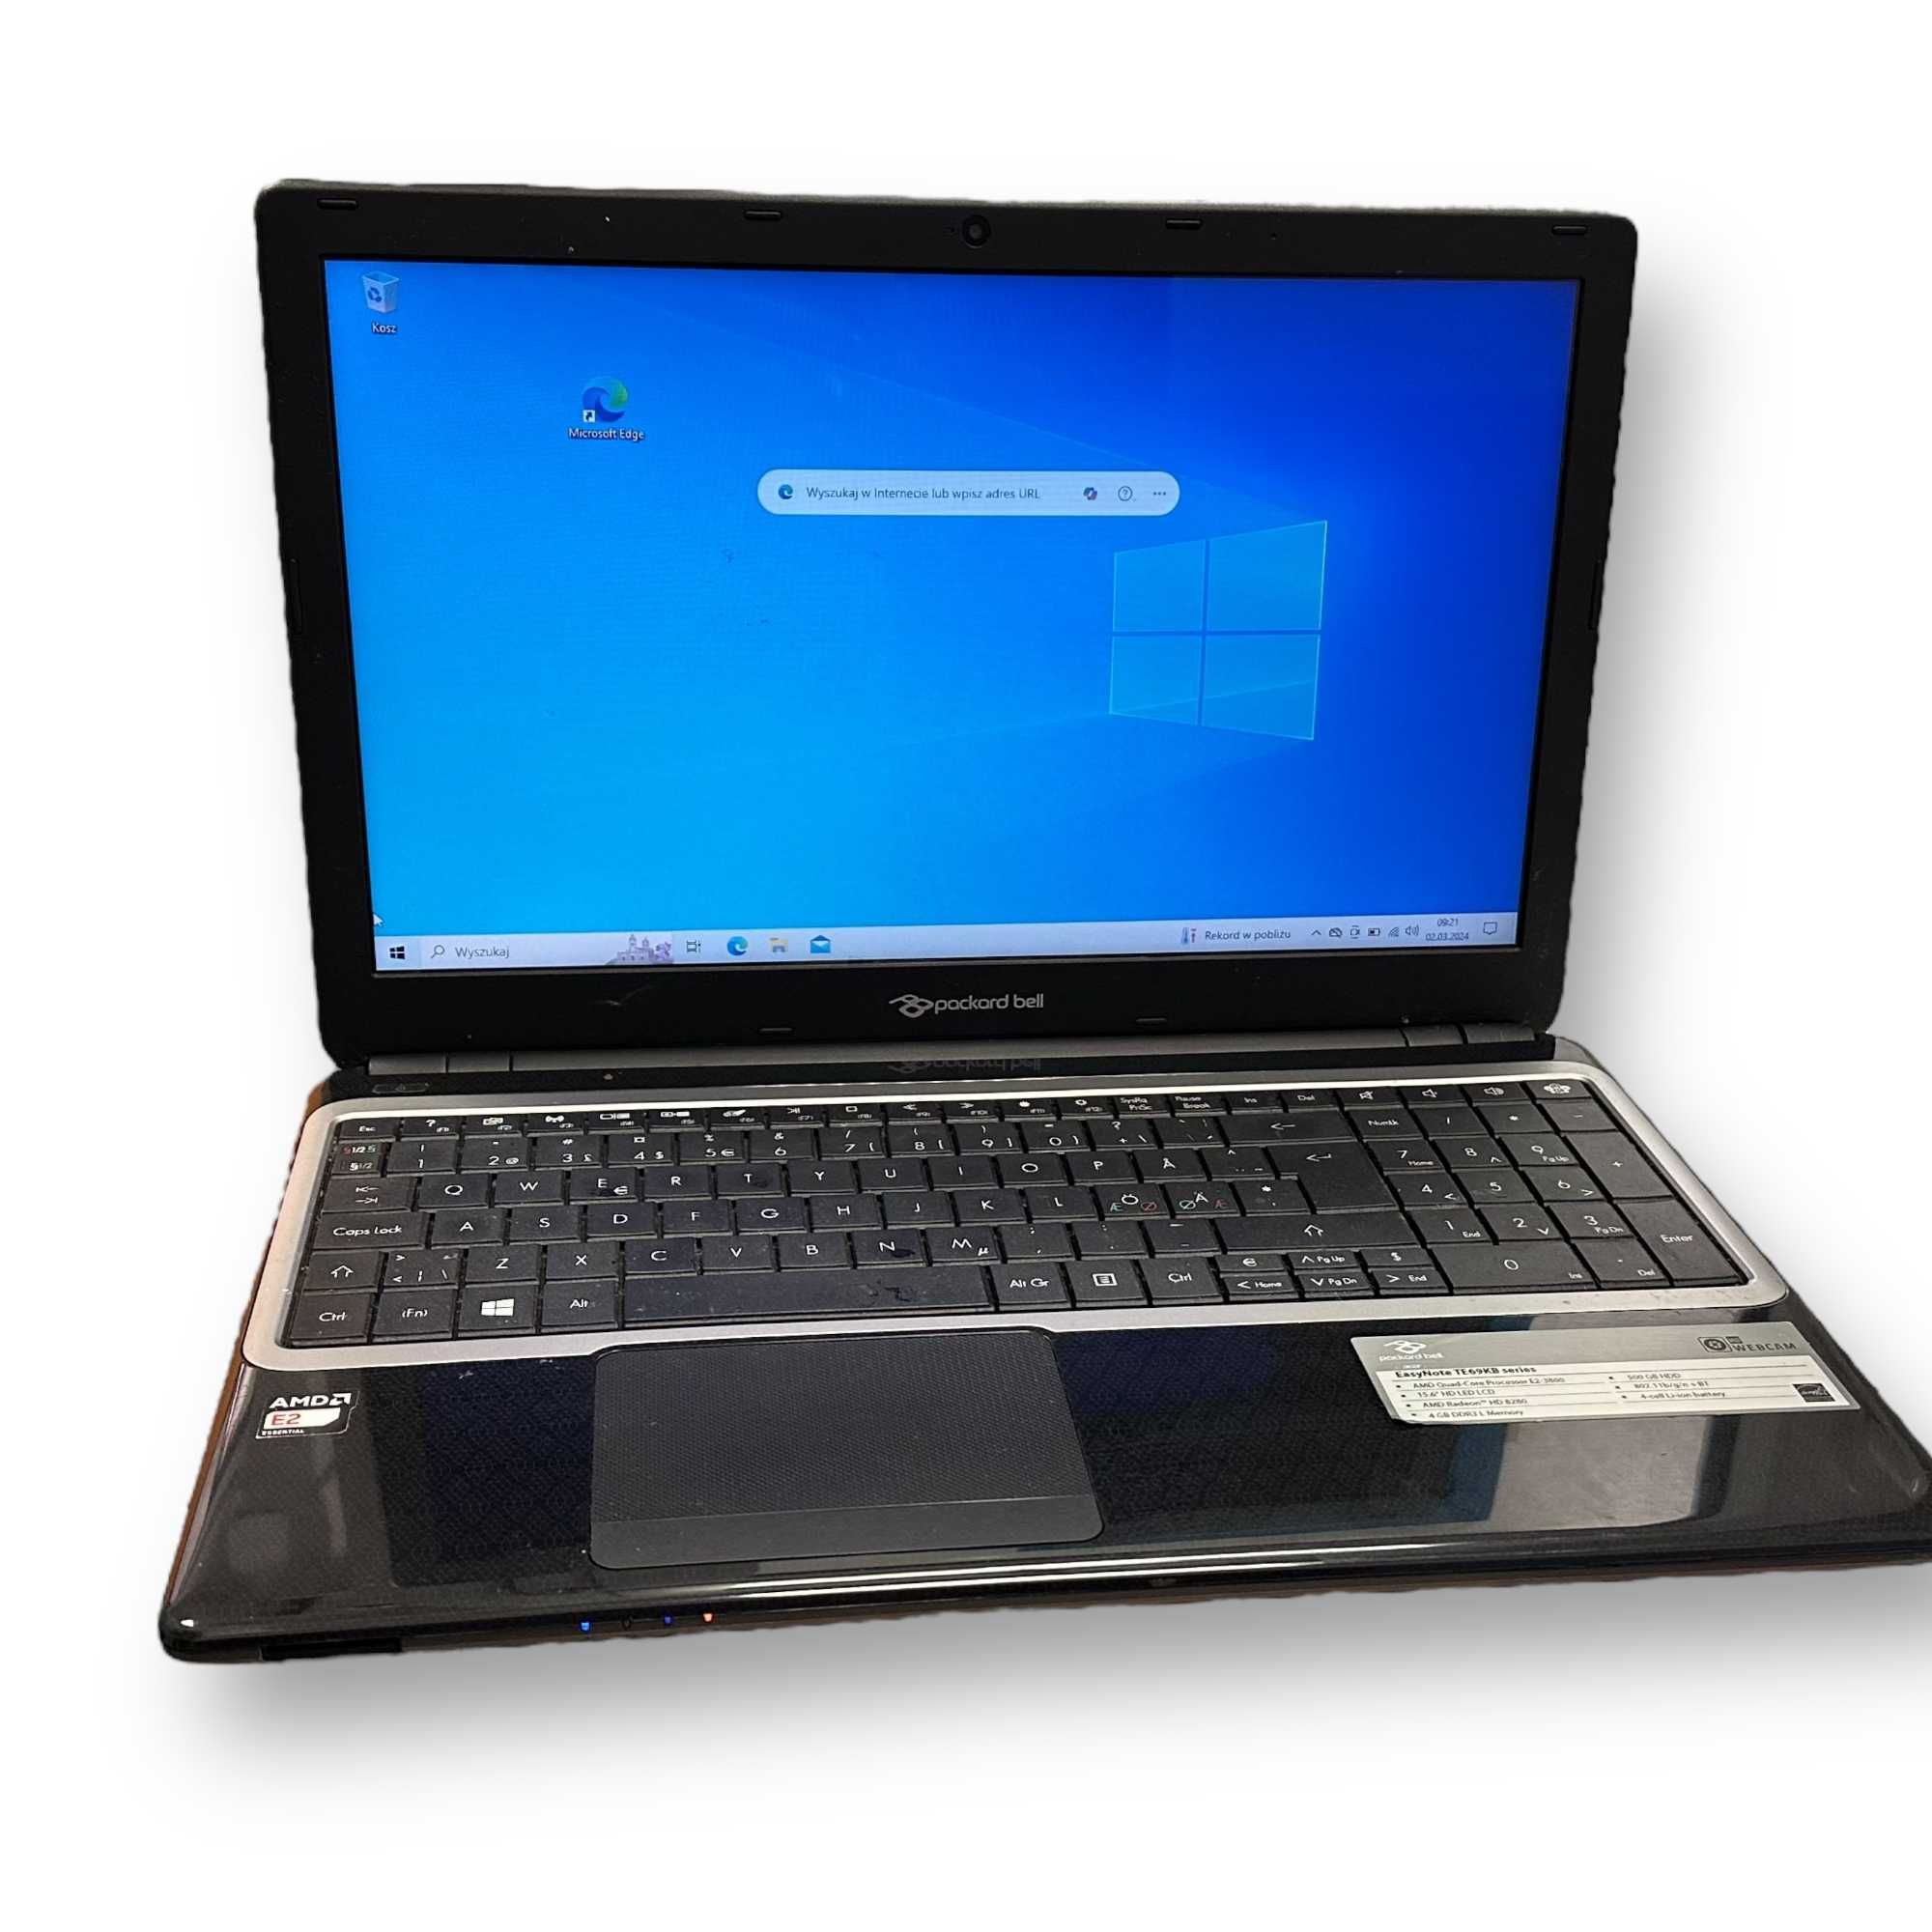 Laptop Packard Bell Easynote Te69kb